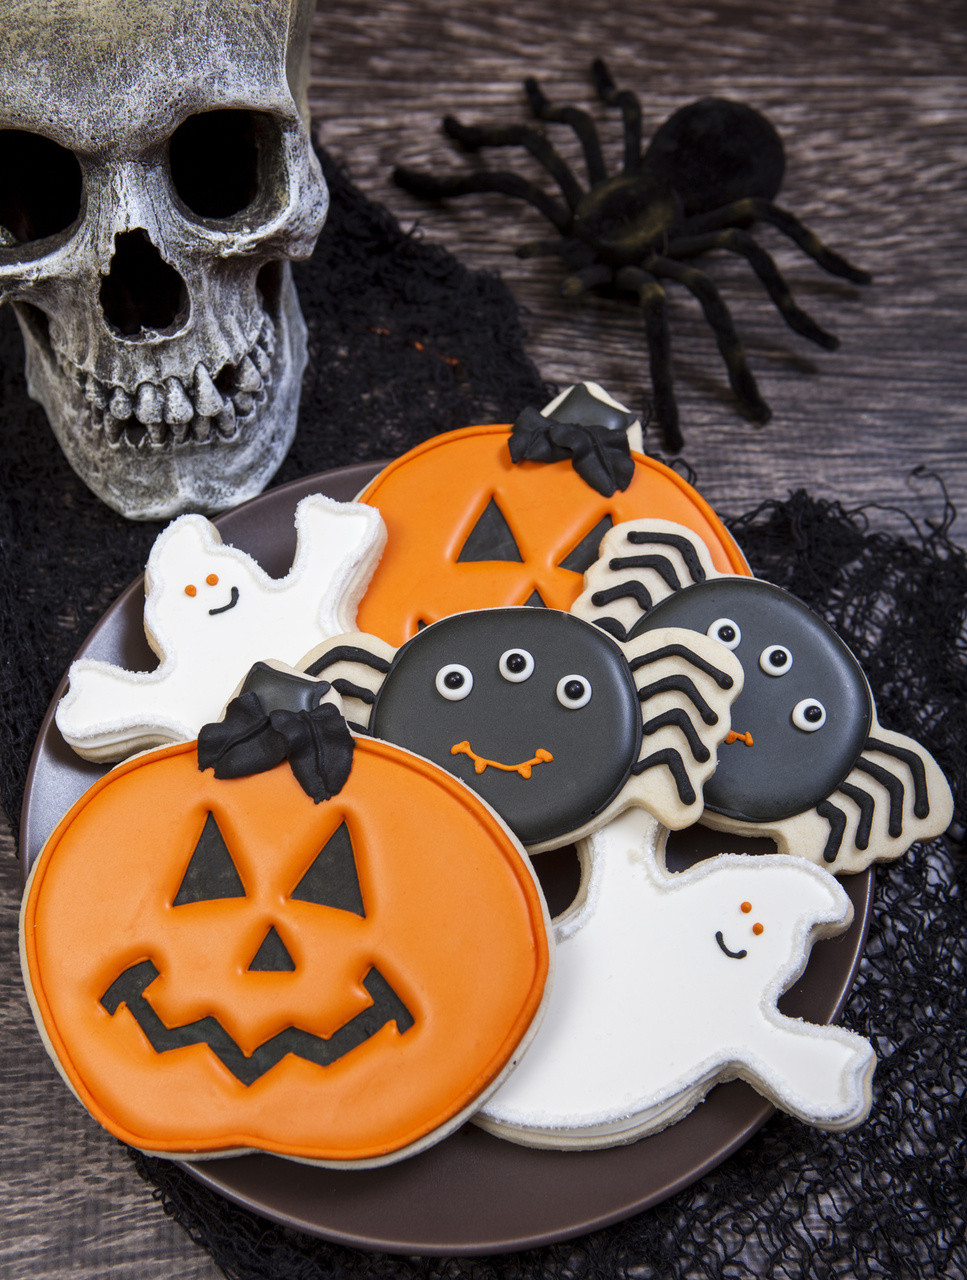 Halloween Decorated Cookies
 Spooky Cookie Halloween Cookie Decorations